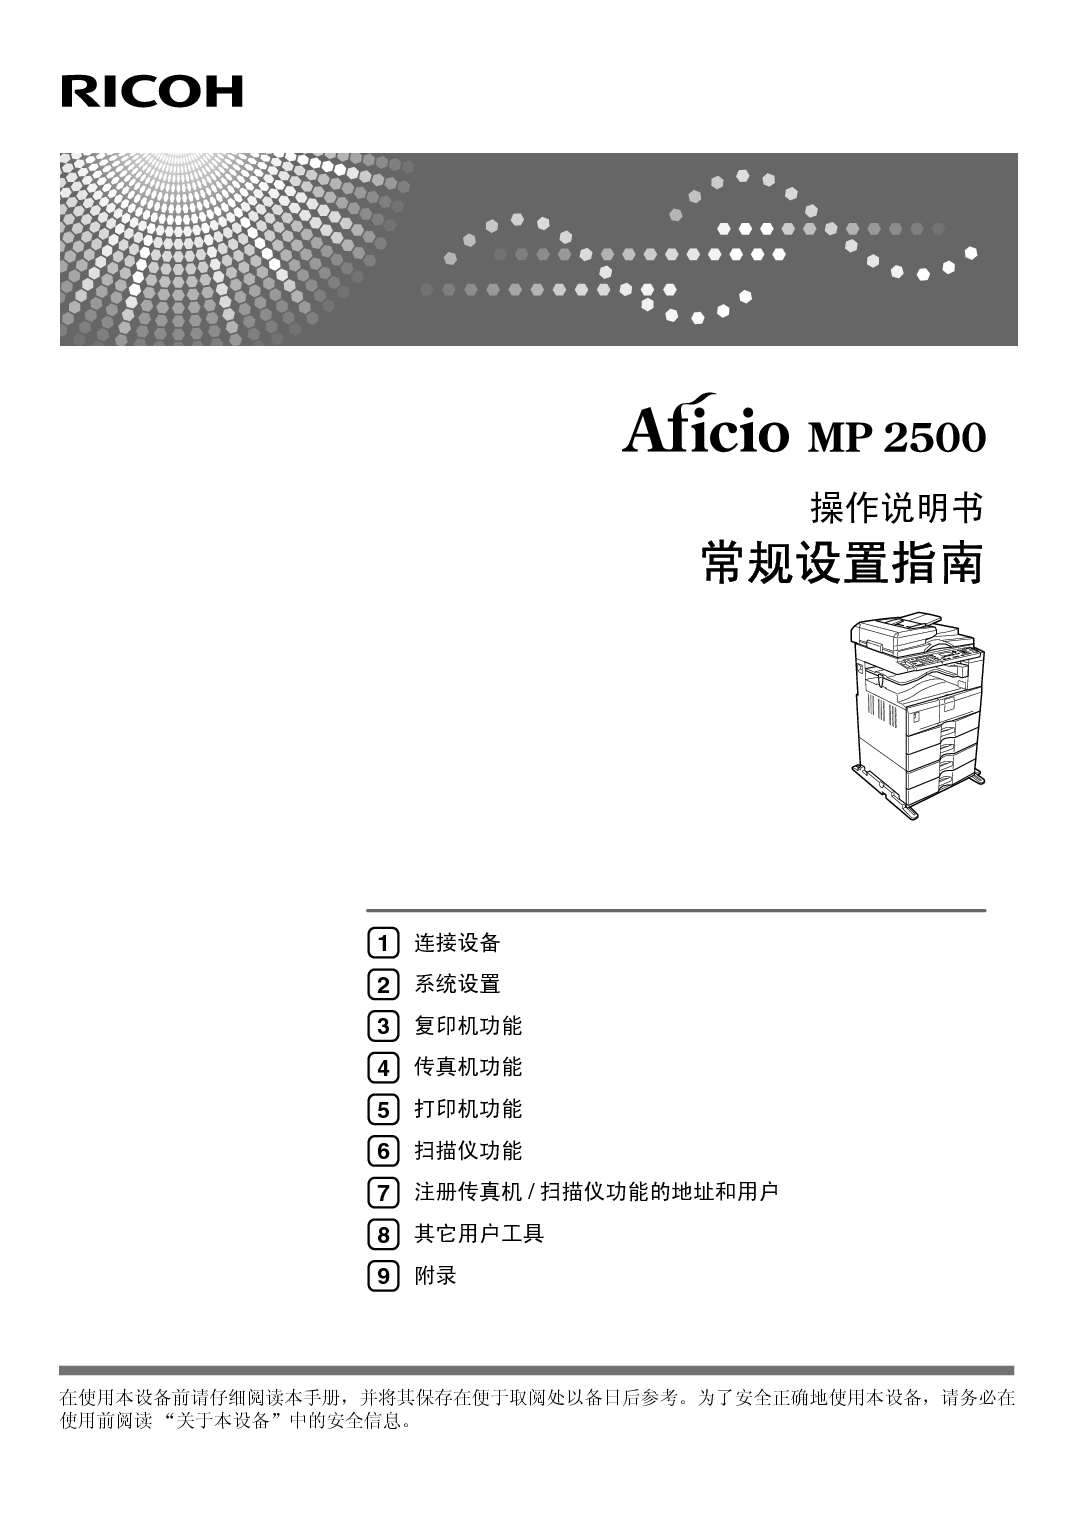 理光 Ricoh Aficio MP 2500 系统设定 使用说明书 封面